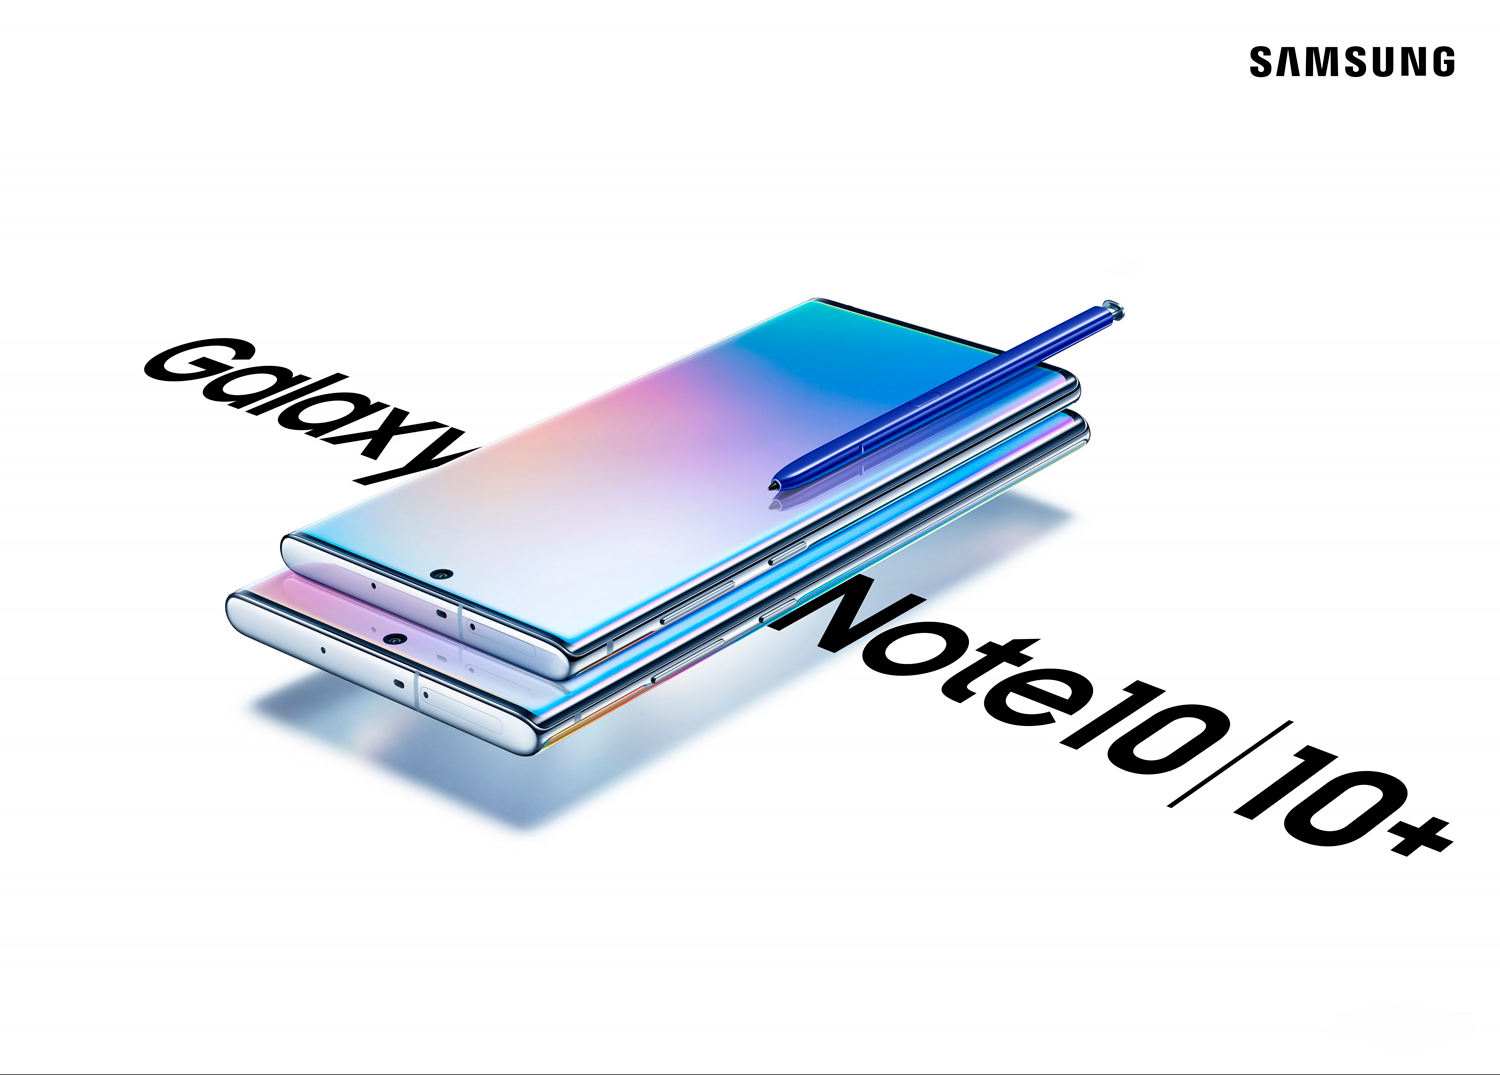 Com um design premium, uma tela cinematográfica, a poderosa S Pen e muito mais, o Note10 é o companheiro ideal para quem busca o máximo em tecnologia.